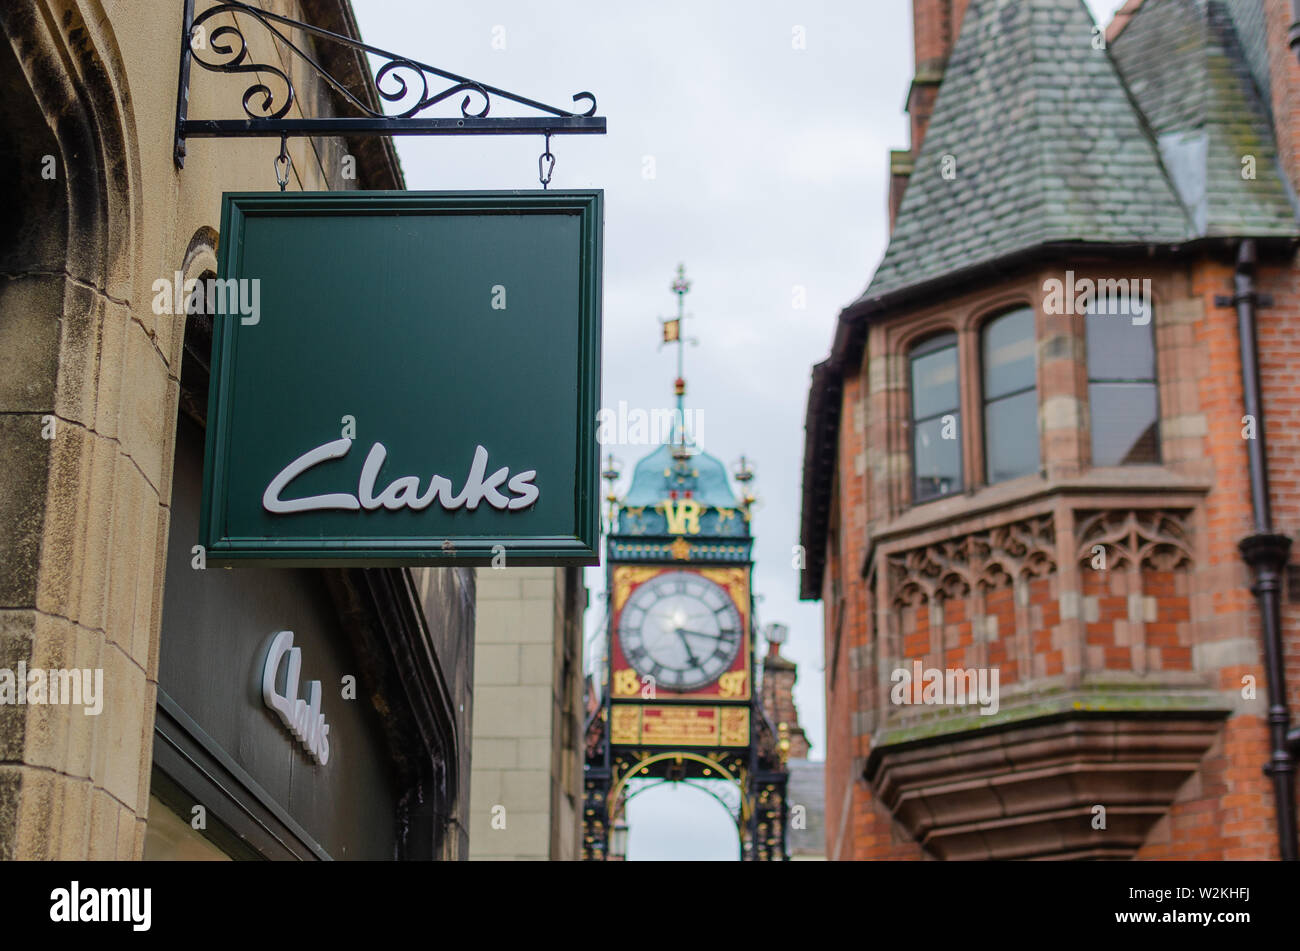 Clarks Shop anmelden und die berühmte Chester Eastgate Clock im Hintergrund. Die High Street, Chester, Vereinigtes Königreich. Stockfoto